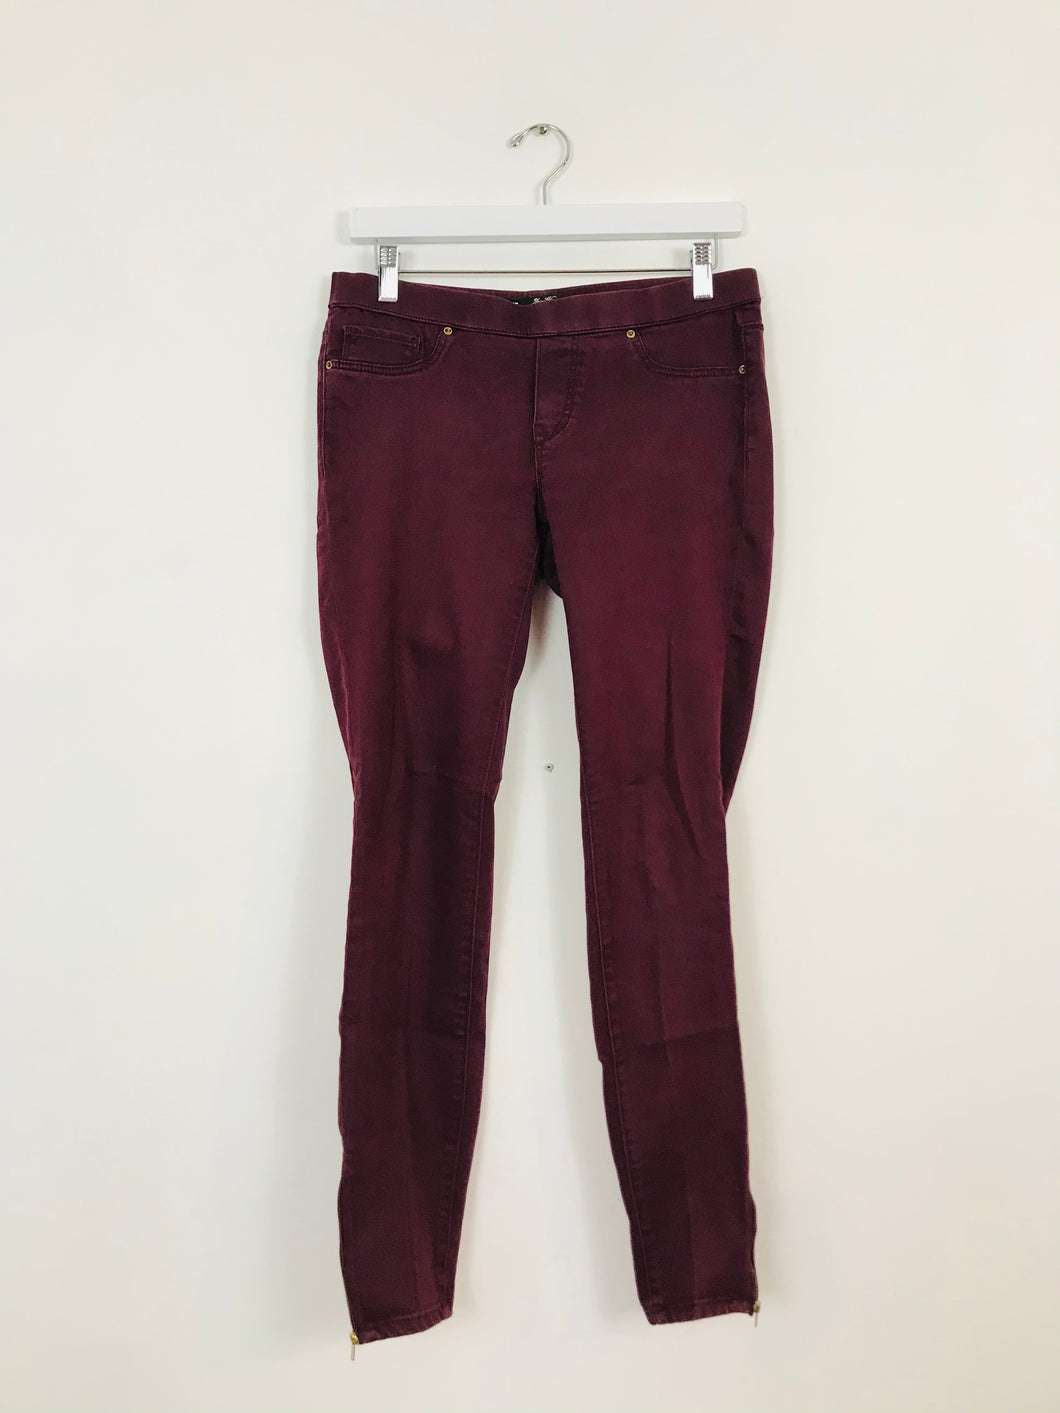 Zara Women’s Jeggings Jeans Leggings | 38 UK10 | Burgundy Red